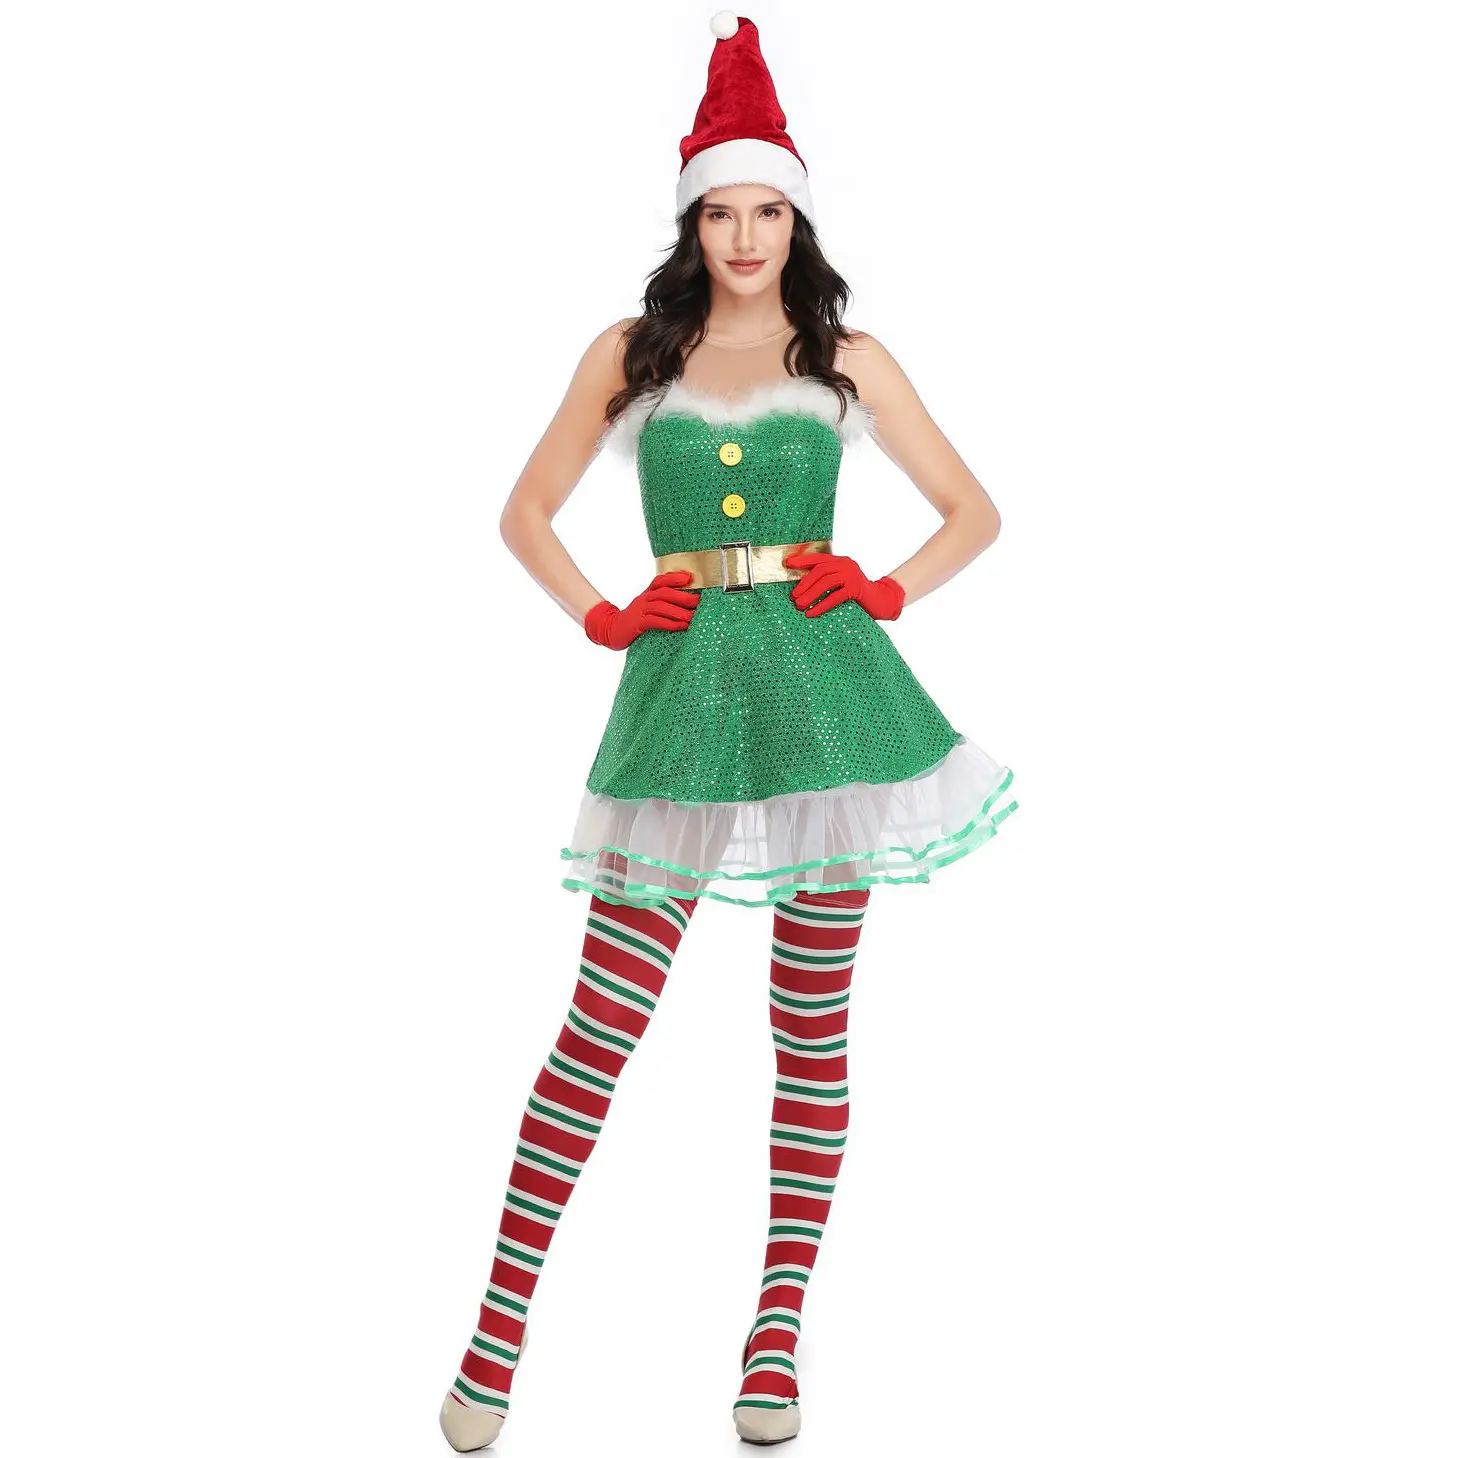 वयस्क सेक्सी पोशाक के लिए क्रिसमस हॉलिडे सांता क्लॉज़ कॉसप्ले आउटफिट क्रिसमस एल्फ पोशाक